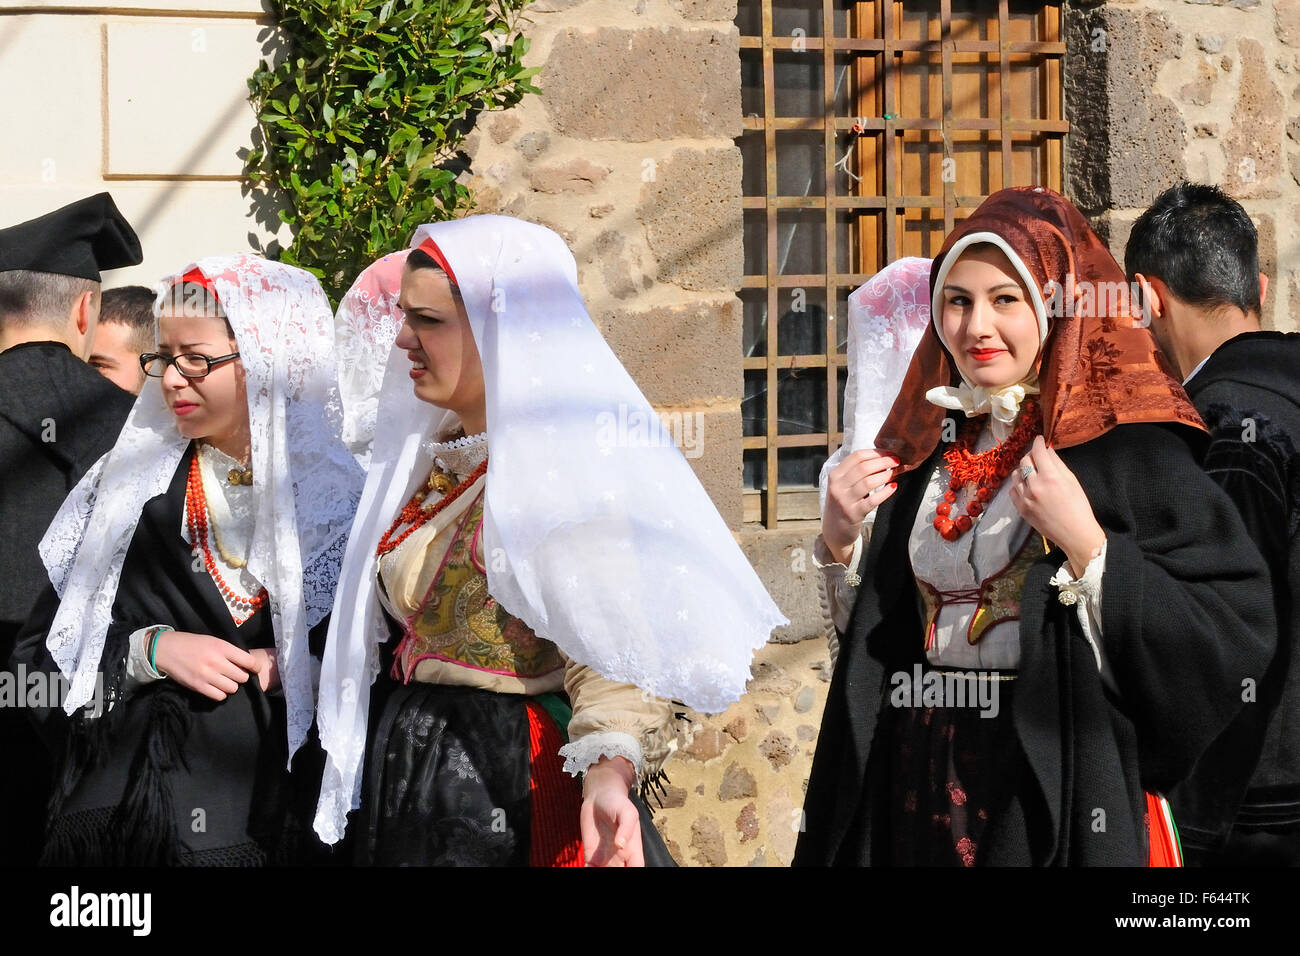 Jóvenes mujeres sardas en ropas tradicionales durante una fiesta de carnaval, Seneghe, Cerdeña, Italia, Europa Foto de stock